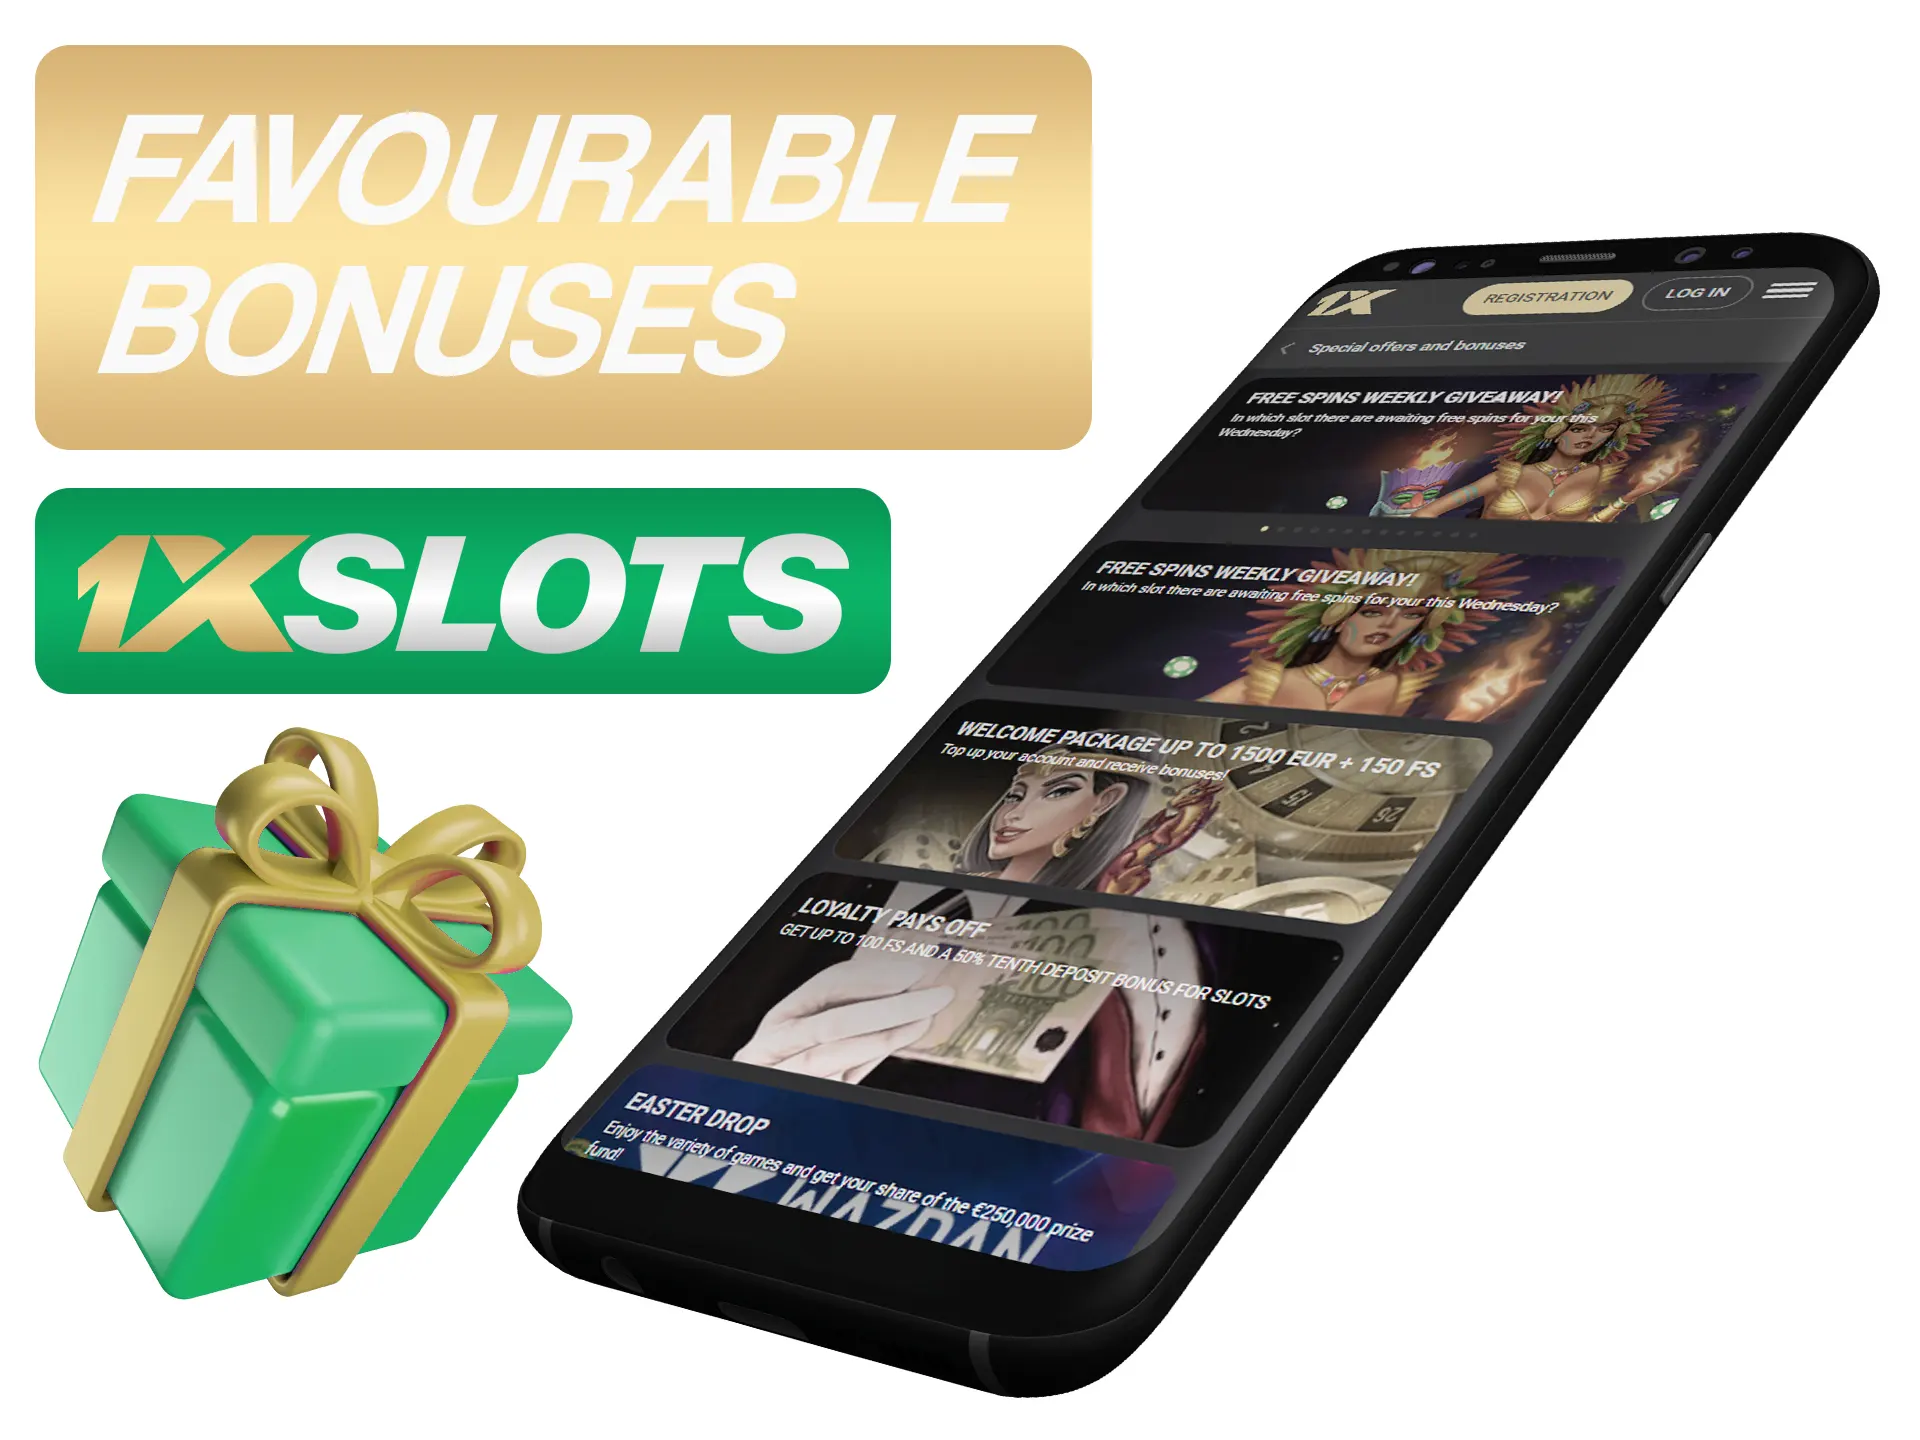 Get best bonuses by using 1xSlots app.